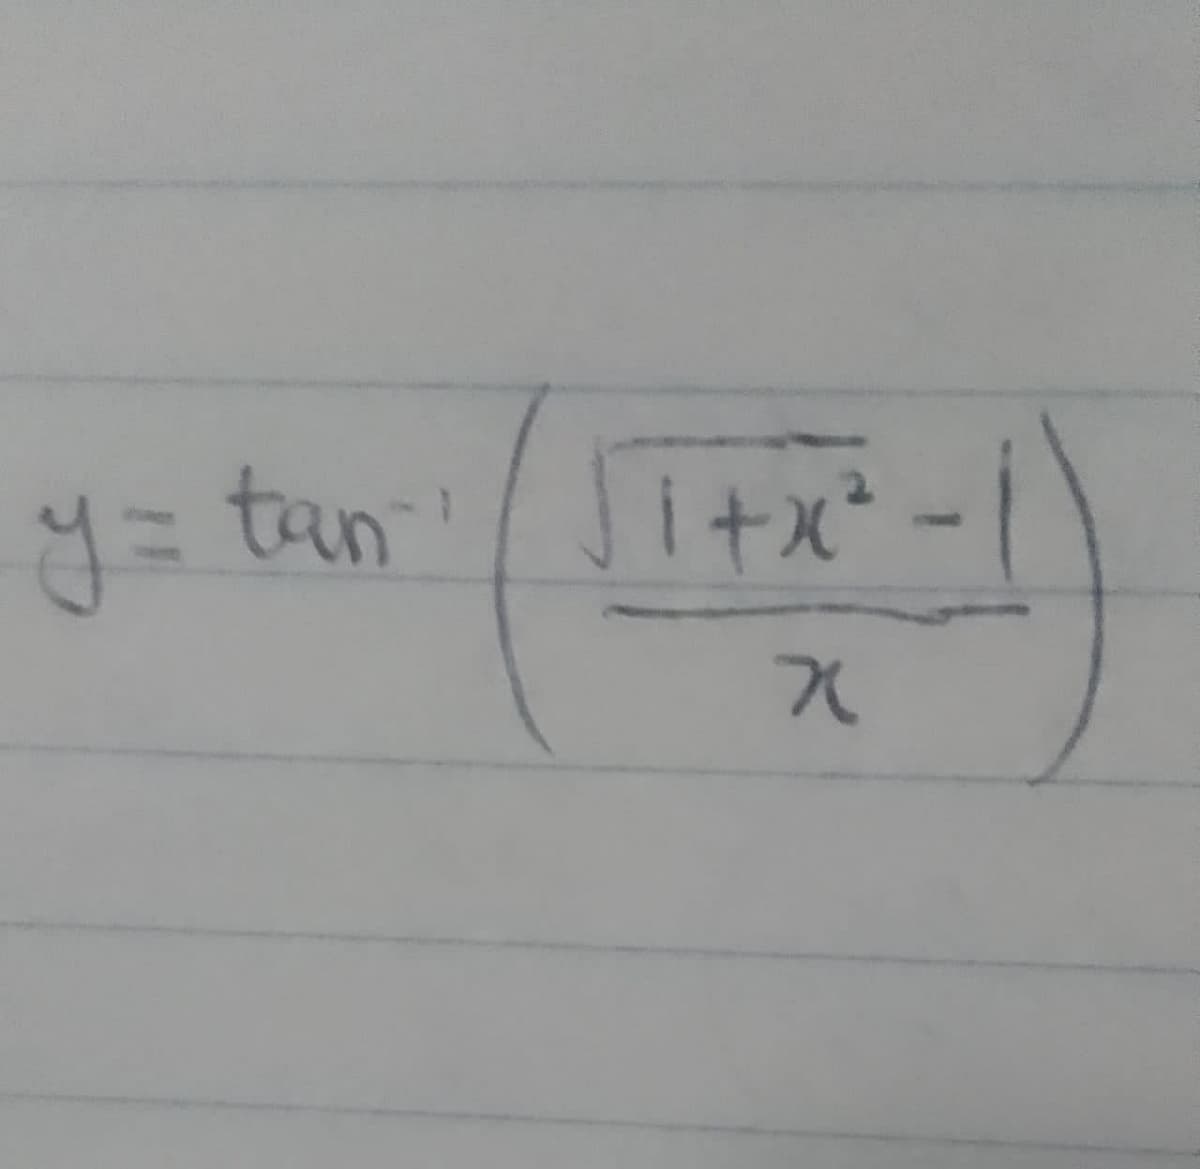 (1+x²-1)
y = tan²¹ / √1+x².